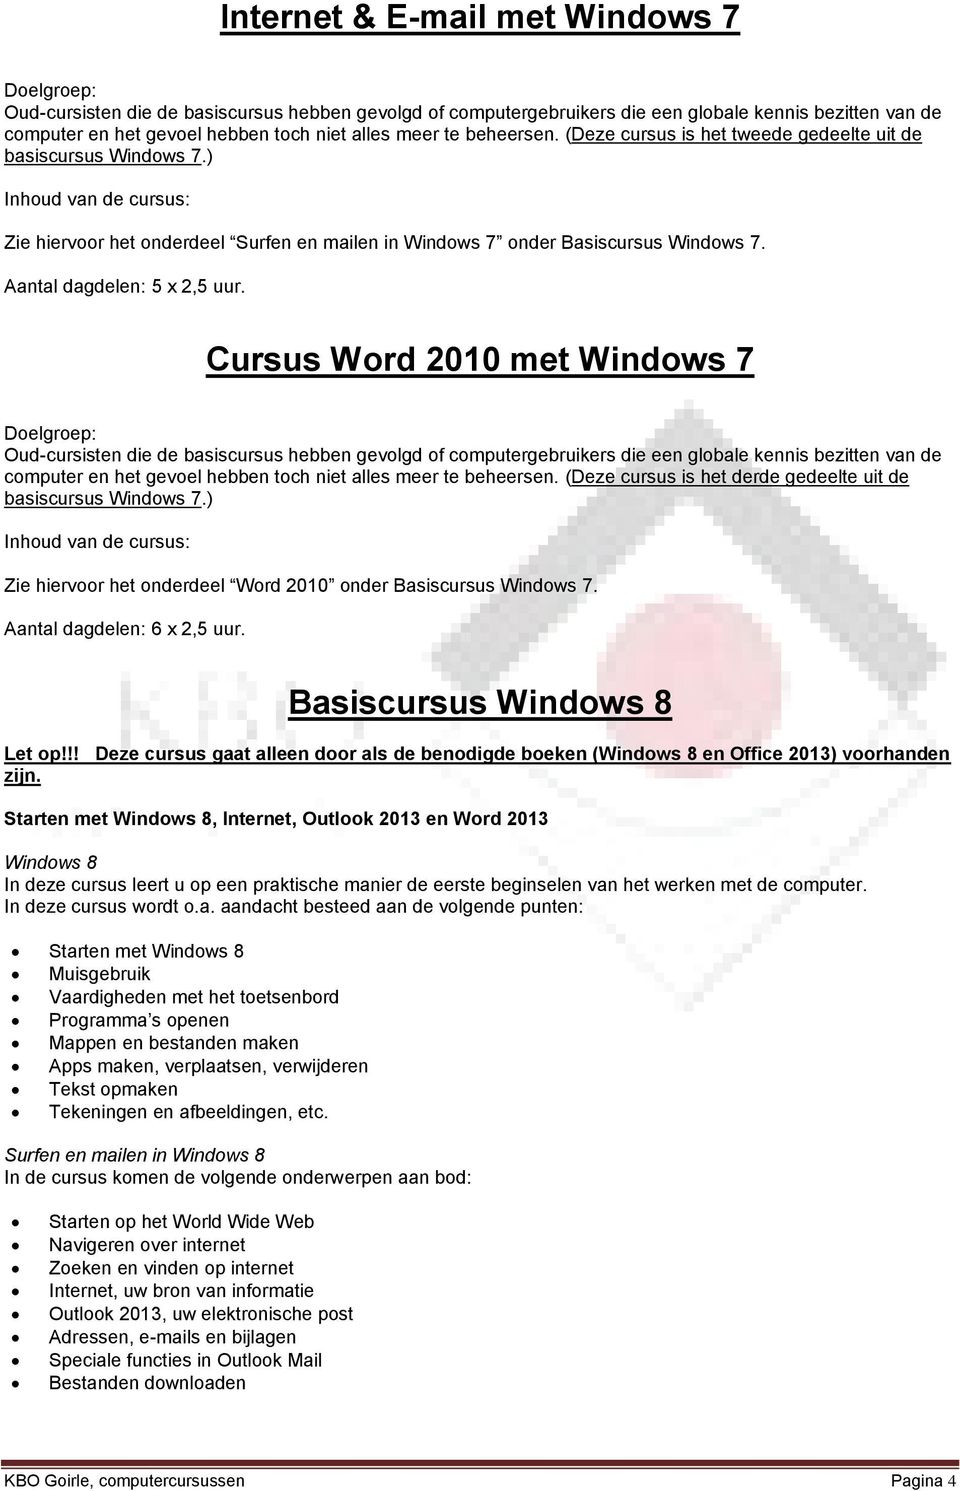 Cursus Word 2010 met Windows 7 computer en het gevoel hebben toch niet alles meer te beheersen. (Deze cursus is het derde gedeelte uit de basiscursus Windows 7.